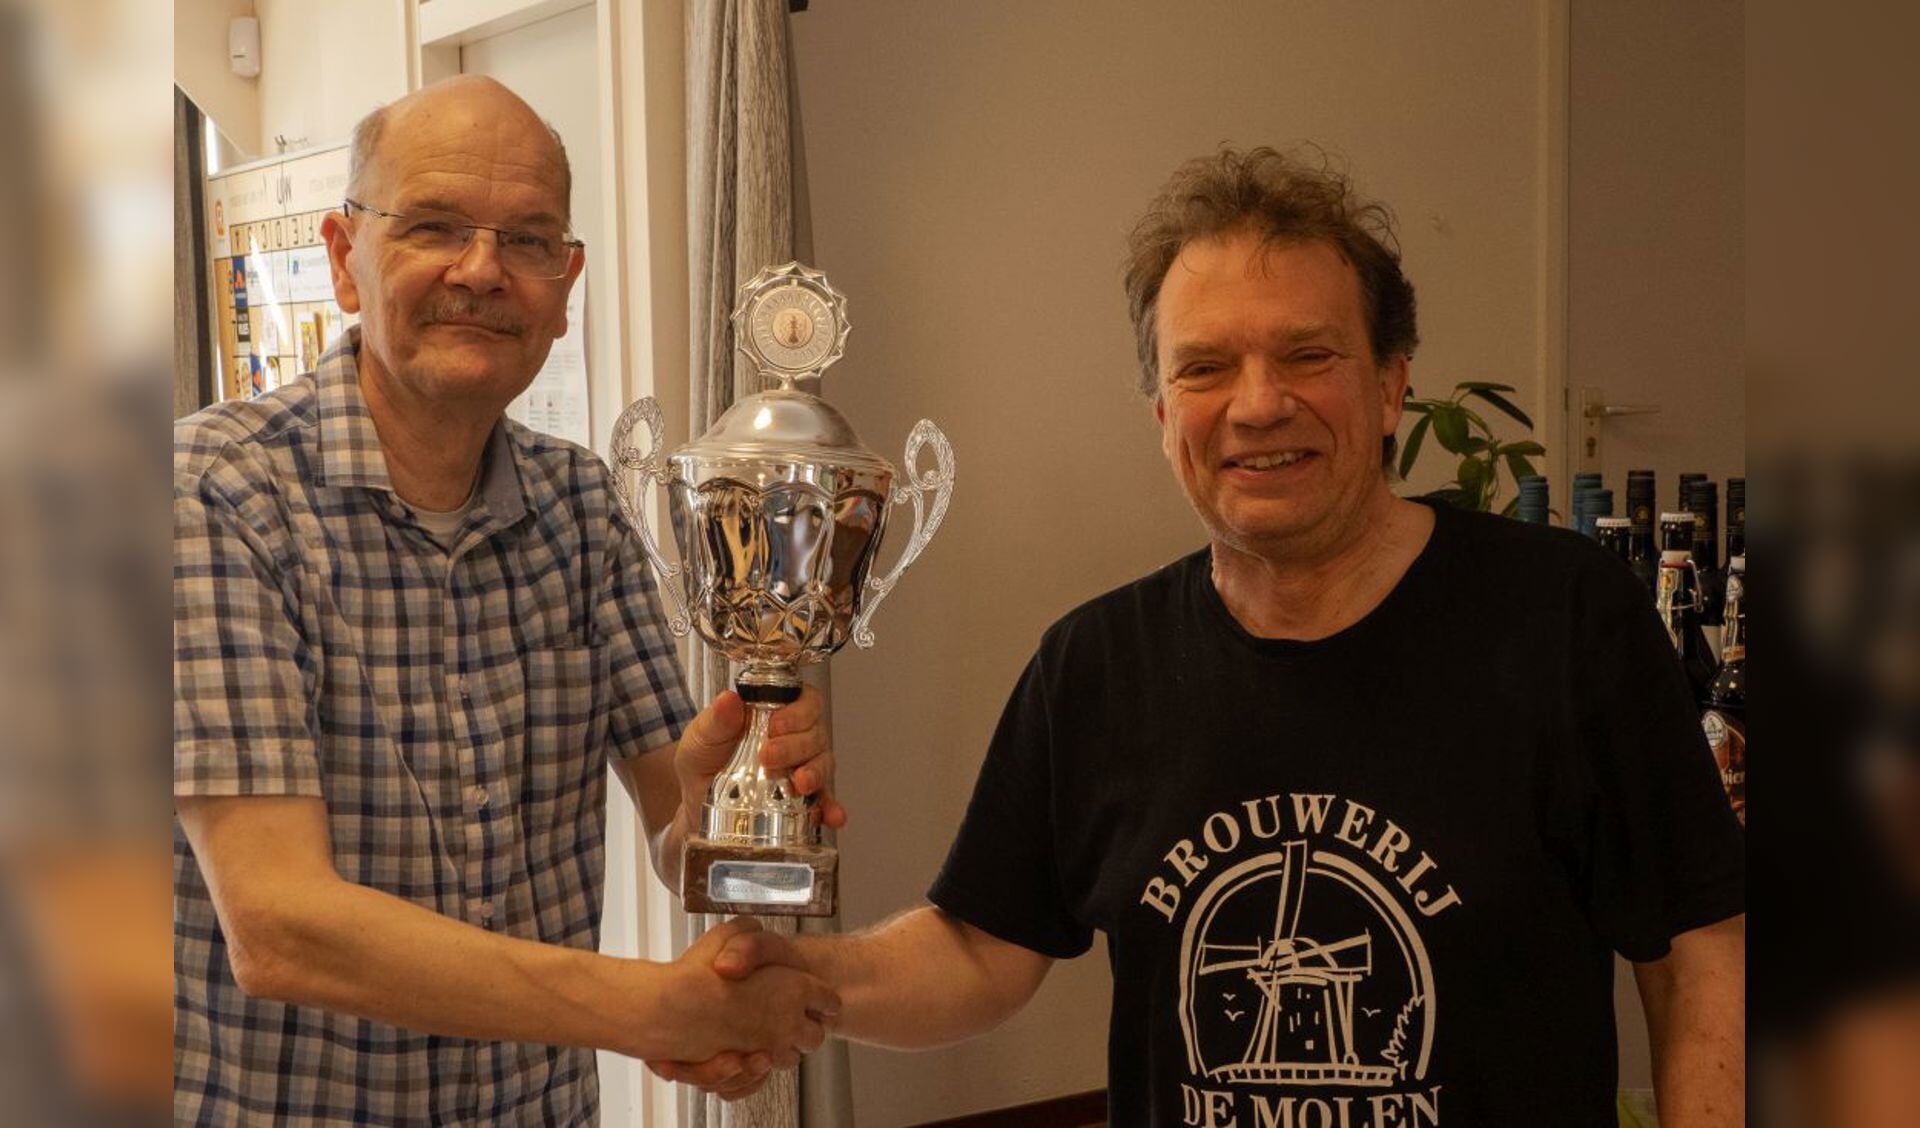 Toernooidirecteur Mark van Hulst overhandigt de wisselbeker aan de nieuwe kampioen Heico Kerkmeester